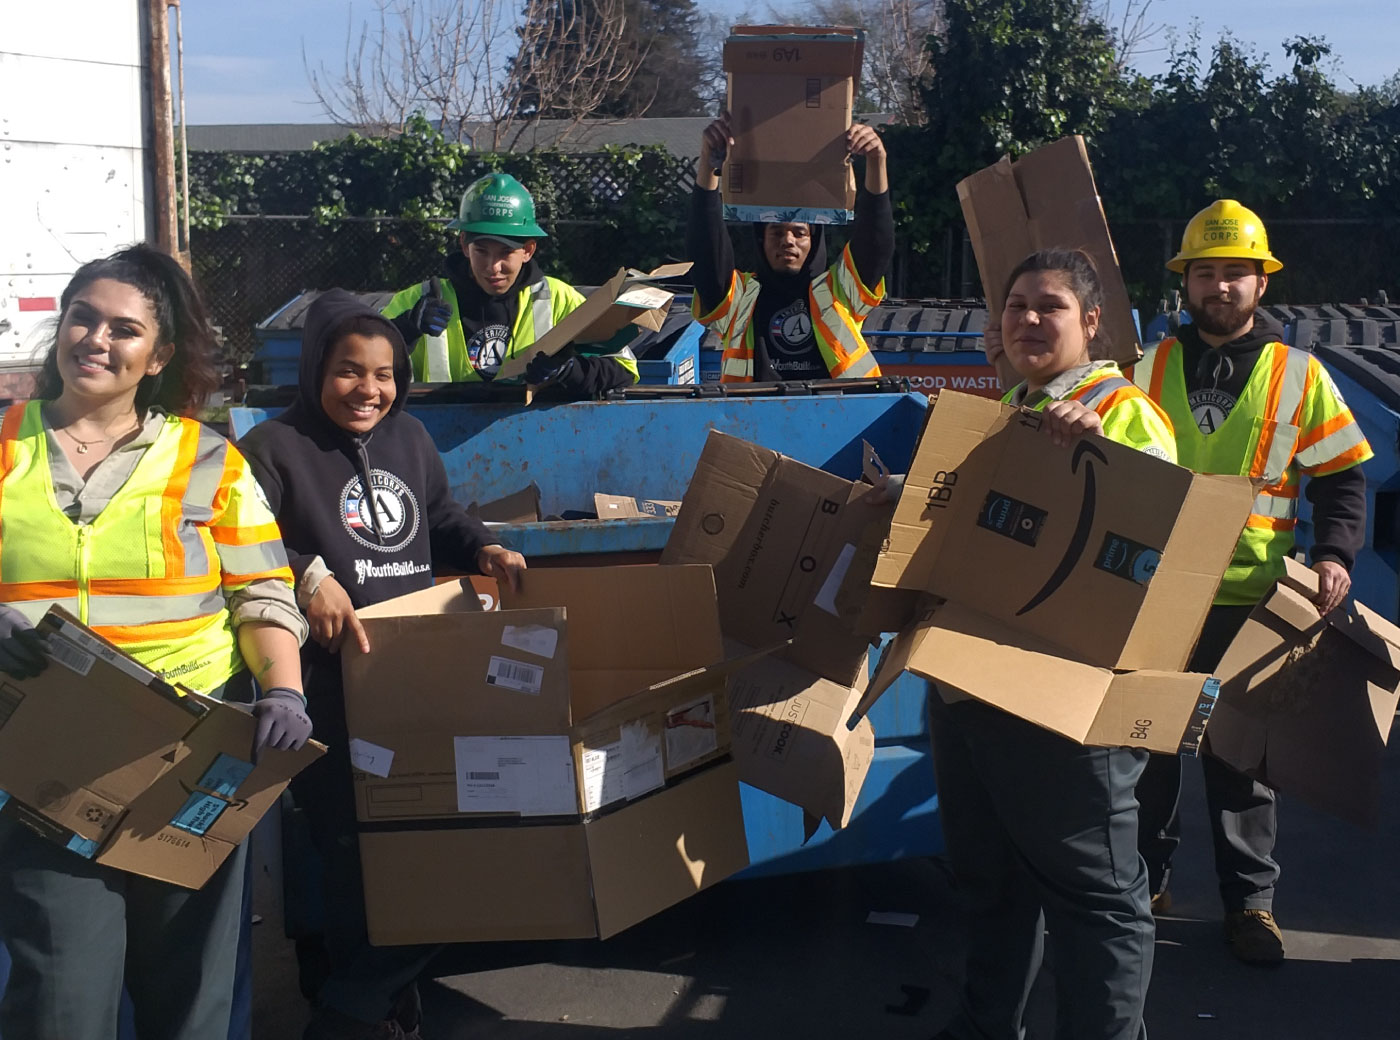 ZWSV staff members breaking down cardboard boxes. 